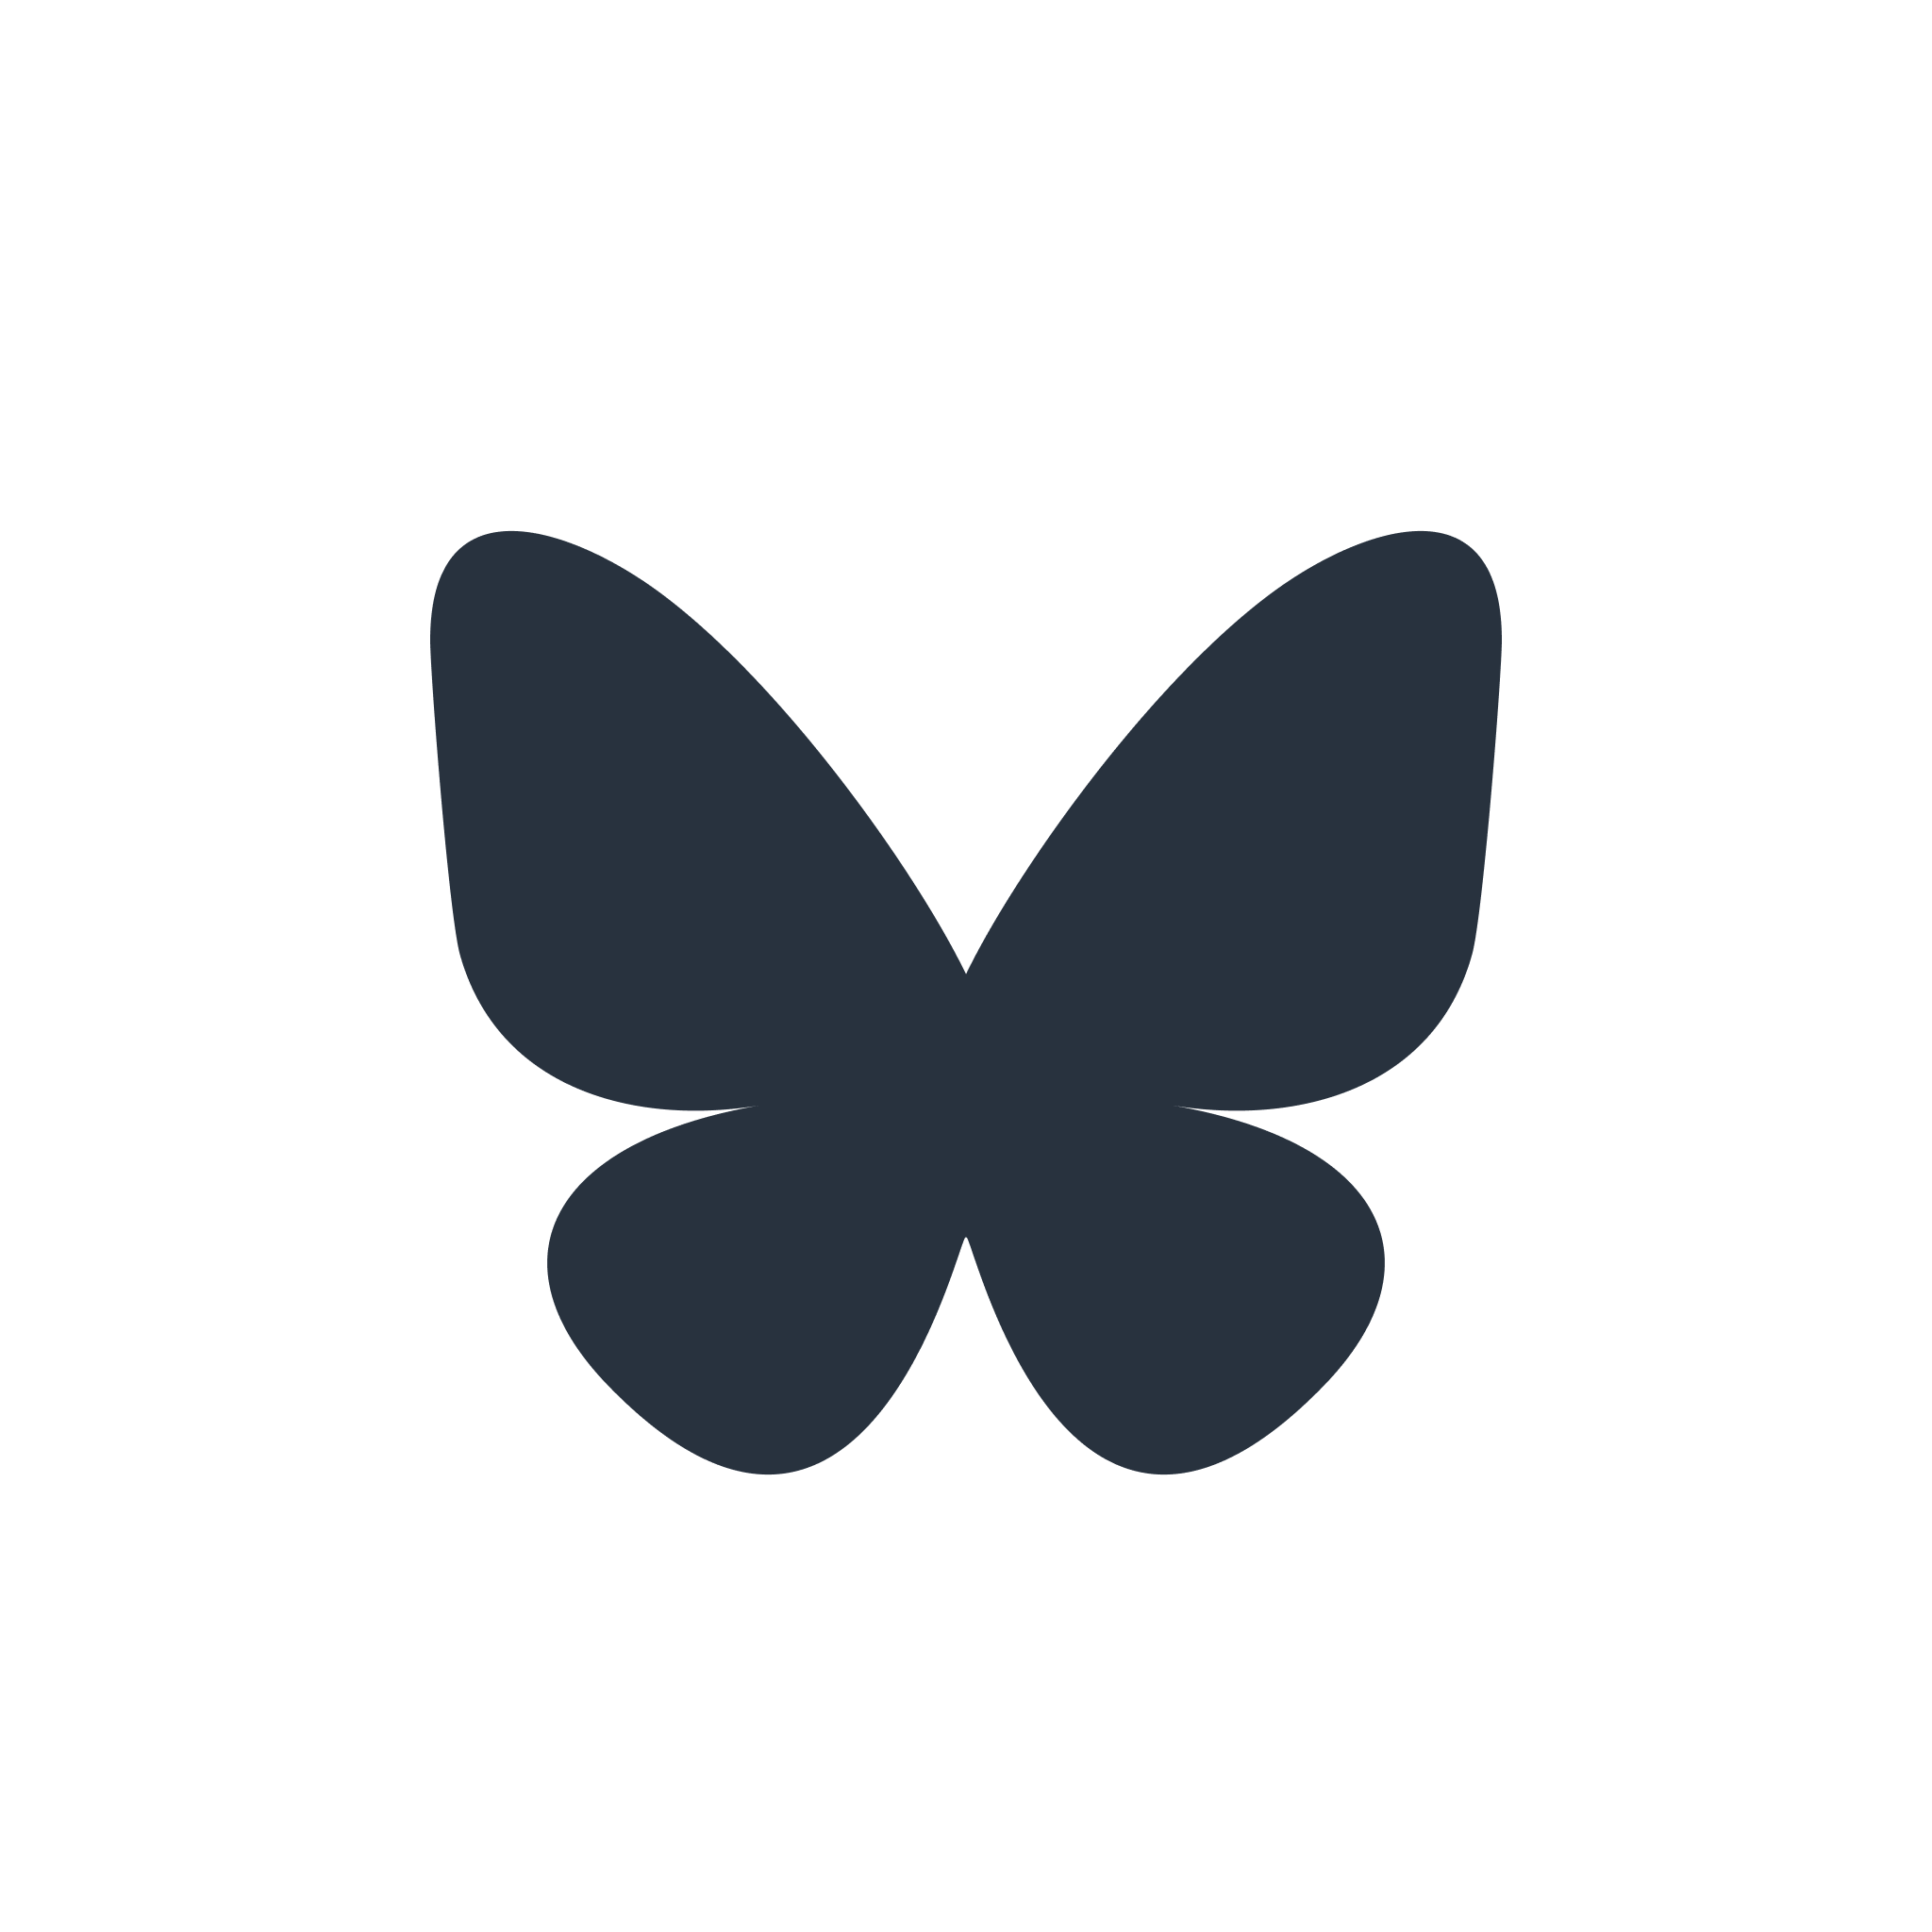 A Gray Version of the BlueSky Butterfly Logo.